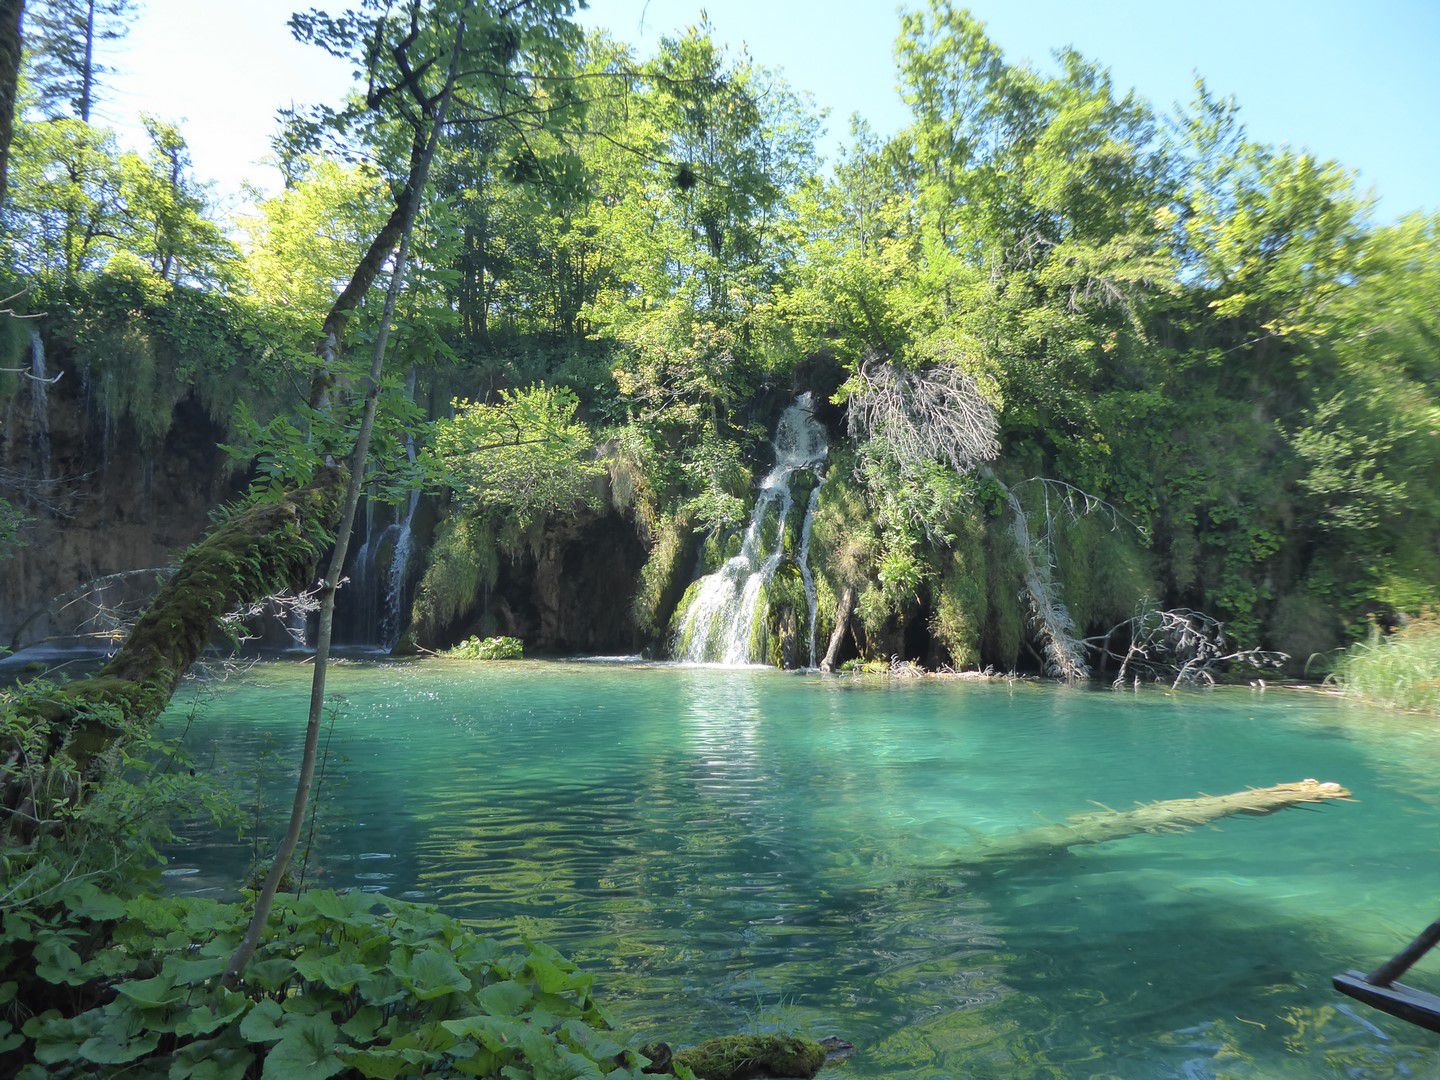 Lundi 27 juillet 2020 - J8 - Les lacs de Plitvice